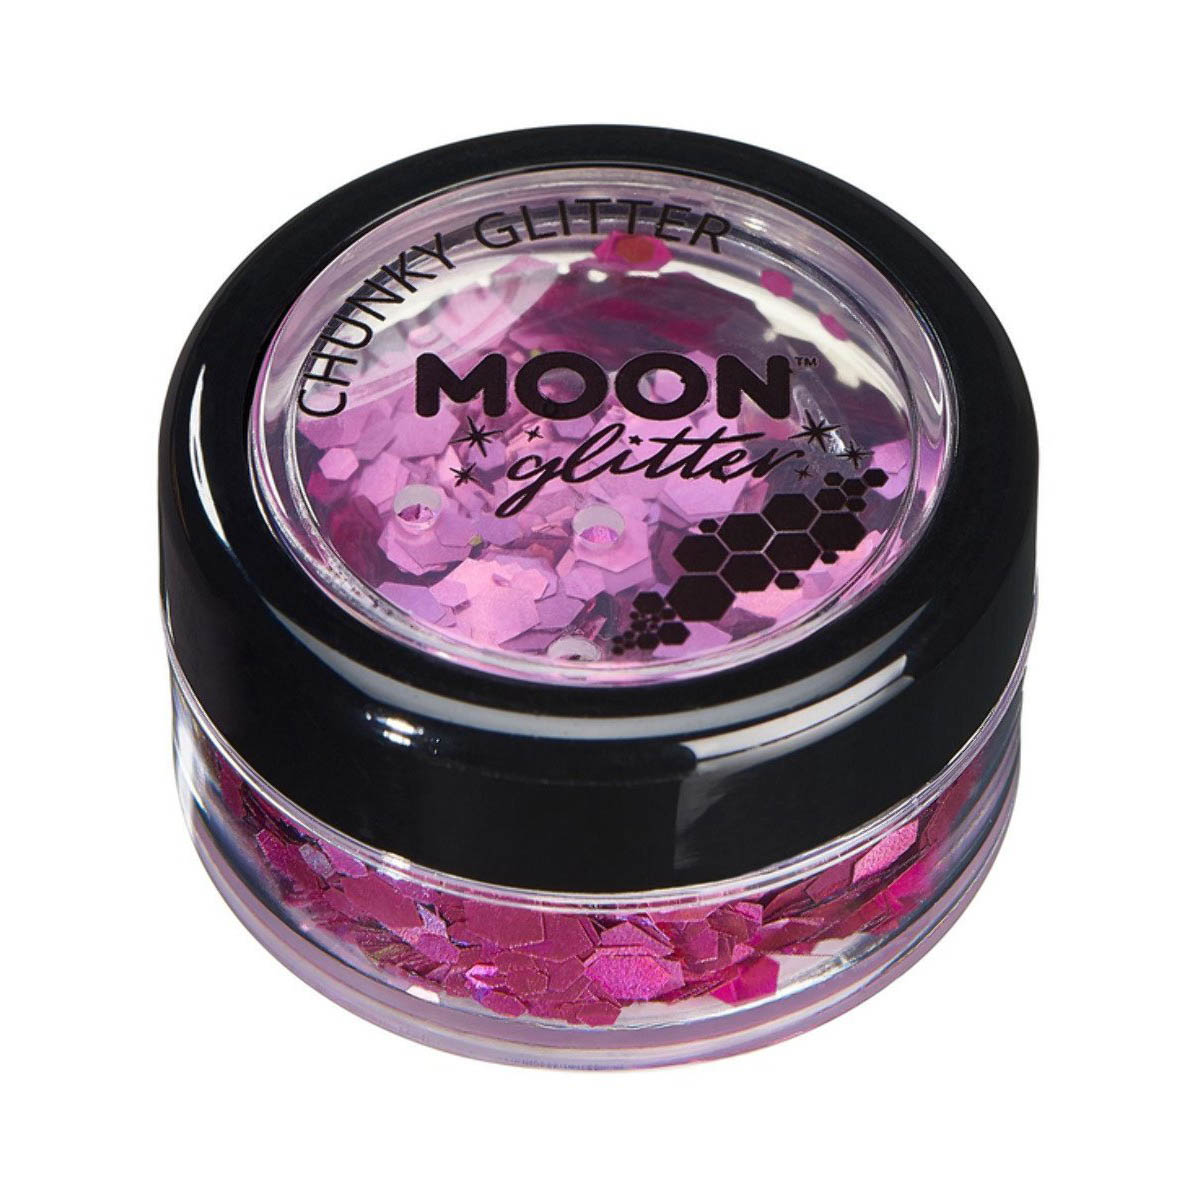 Moon glitter i burk, chunky holografisk 3g Rosa